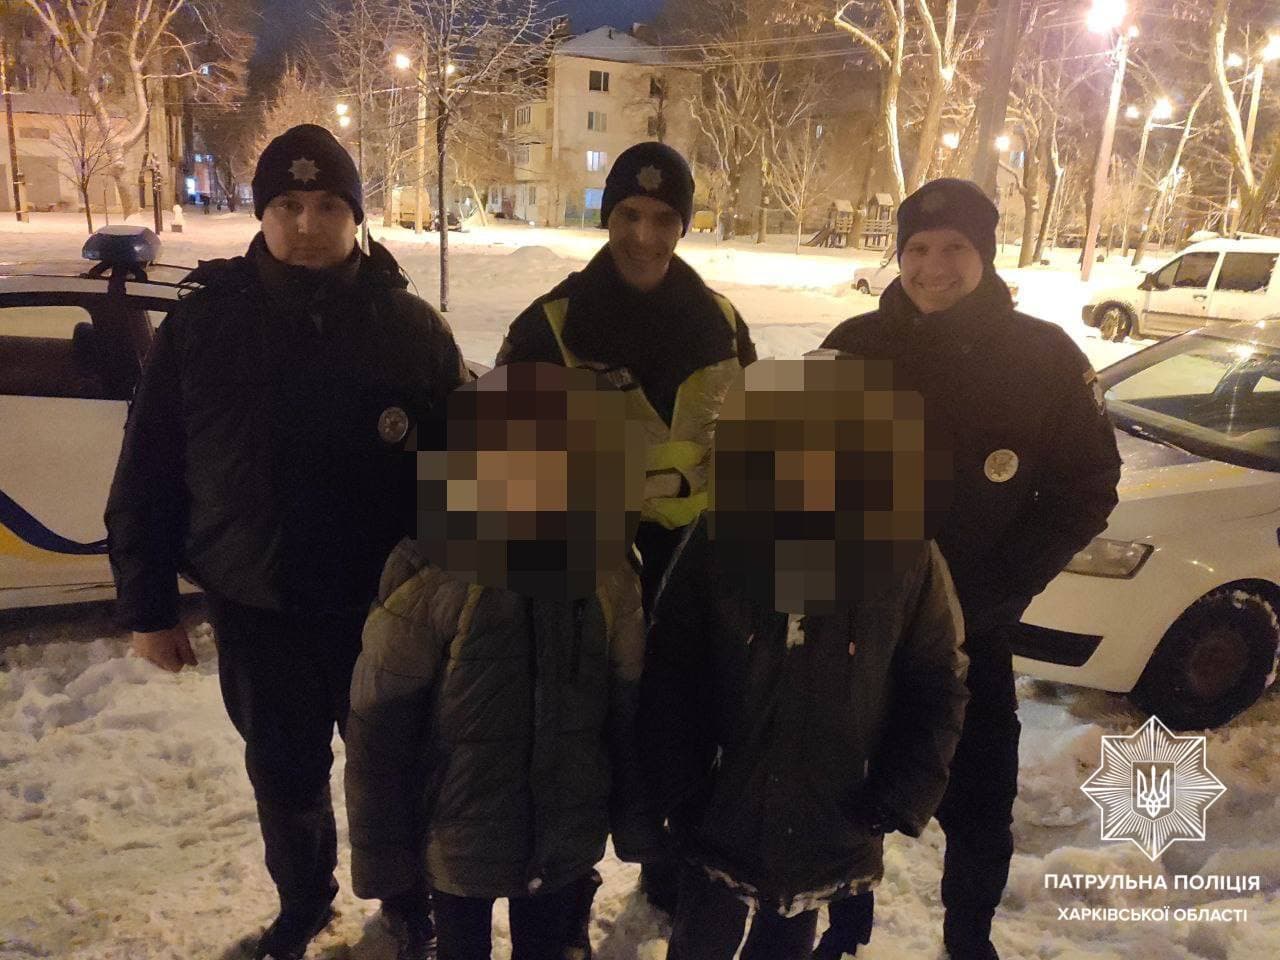 Криминал Харьков: Найдены двое пропавших во время прогулки с матерью 9-летних детей на улице Библика